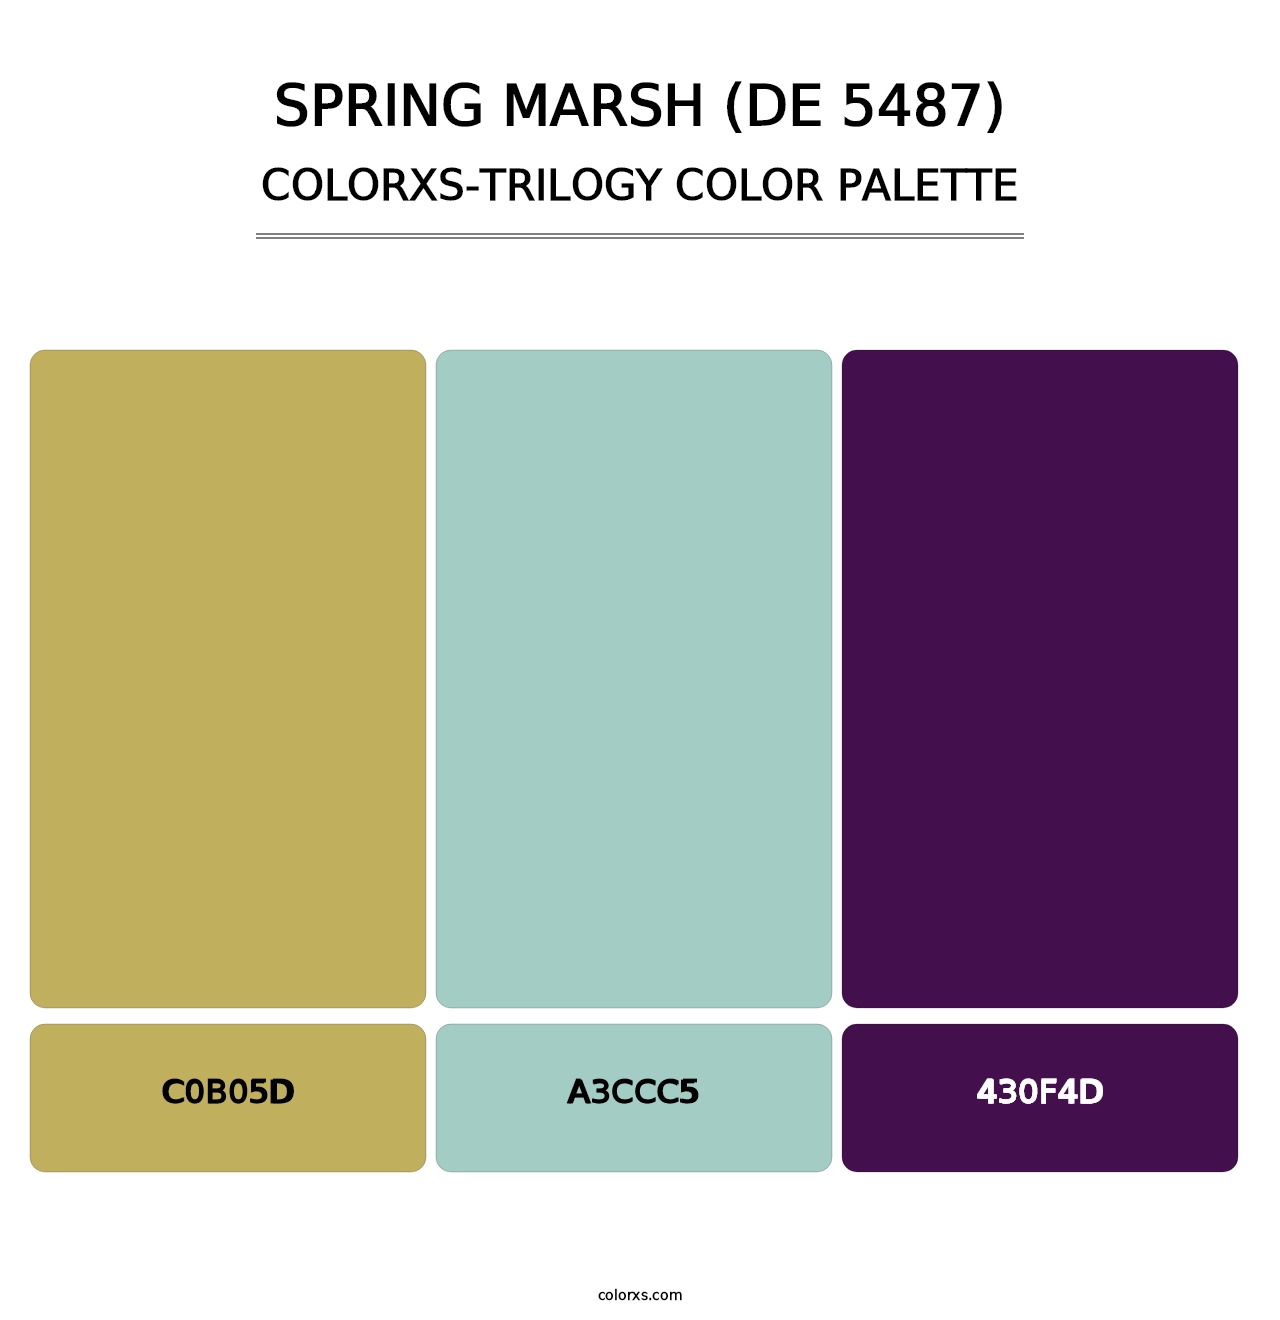 Spring Marsh (DE 5487) - Colorxs Trilogy Palette